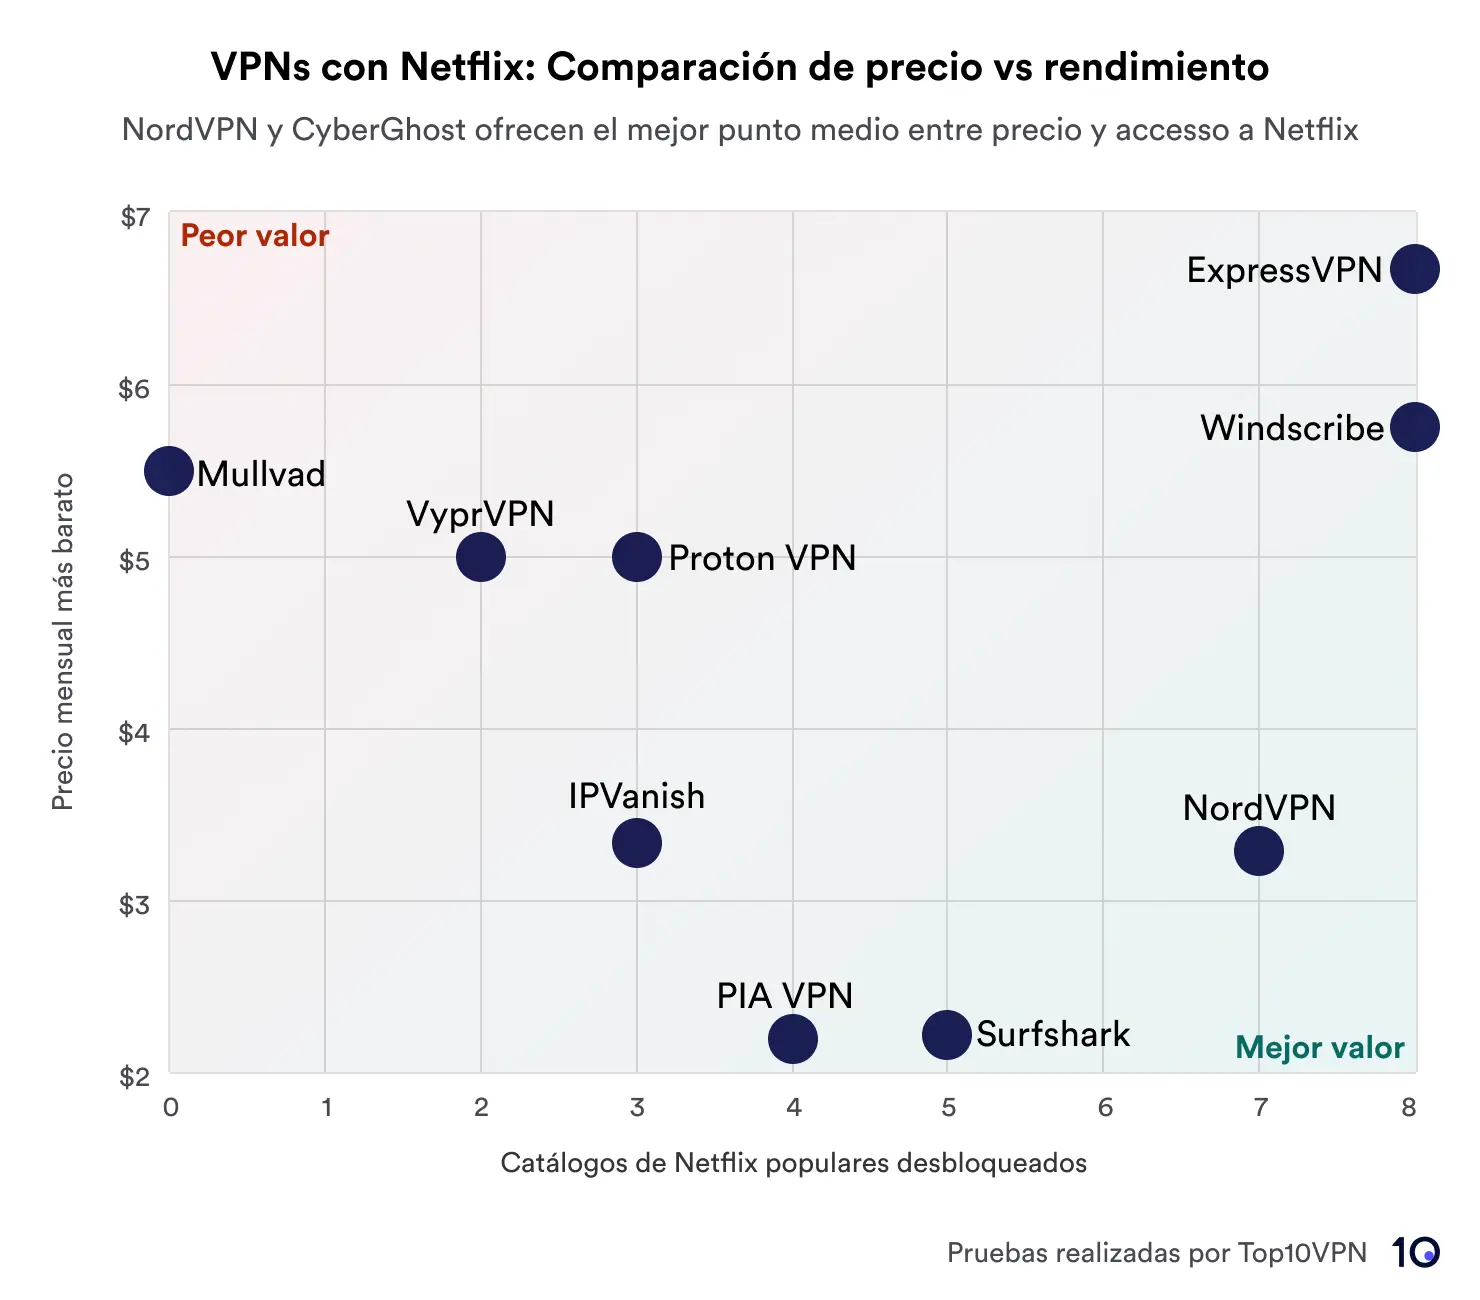 Diagrama de dispersión que muestra una comparación de los servicios VPN según el precio frente al rendimiento en el desbloqueo de bibliotecas de Netflix. NordVPN y CyberGhost se destacan por ofrecer el mejor valor, representado en el área marcada como 